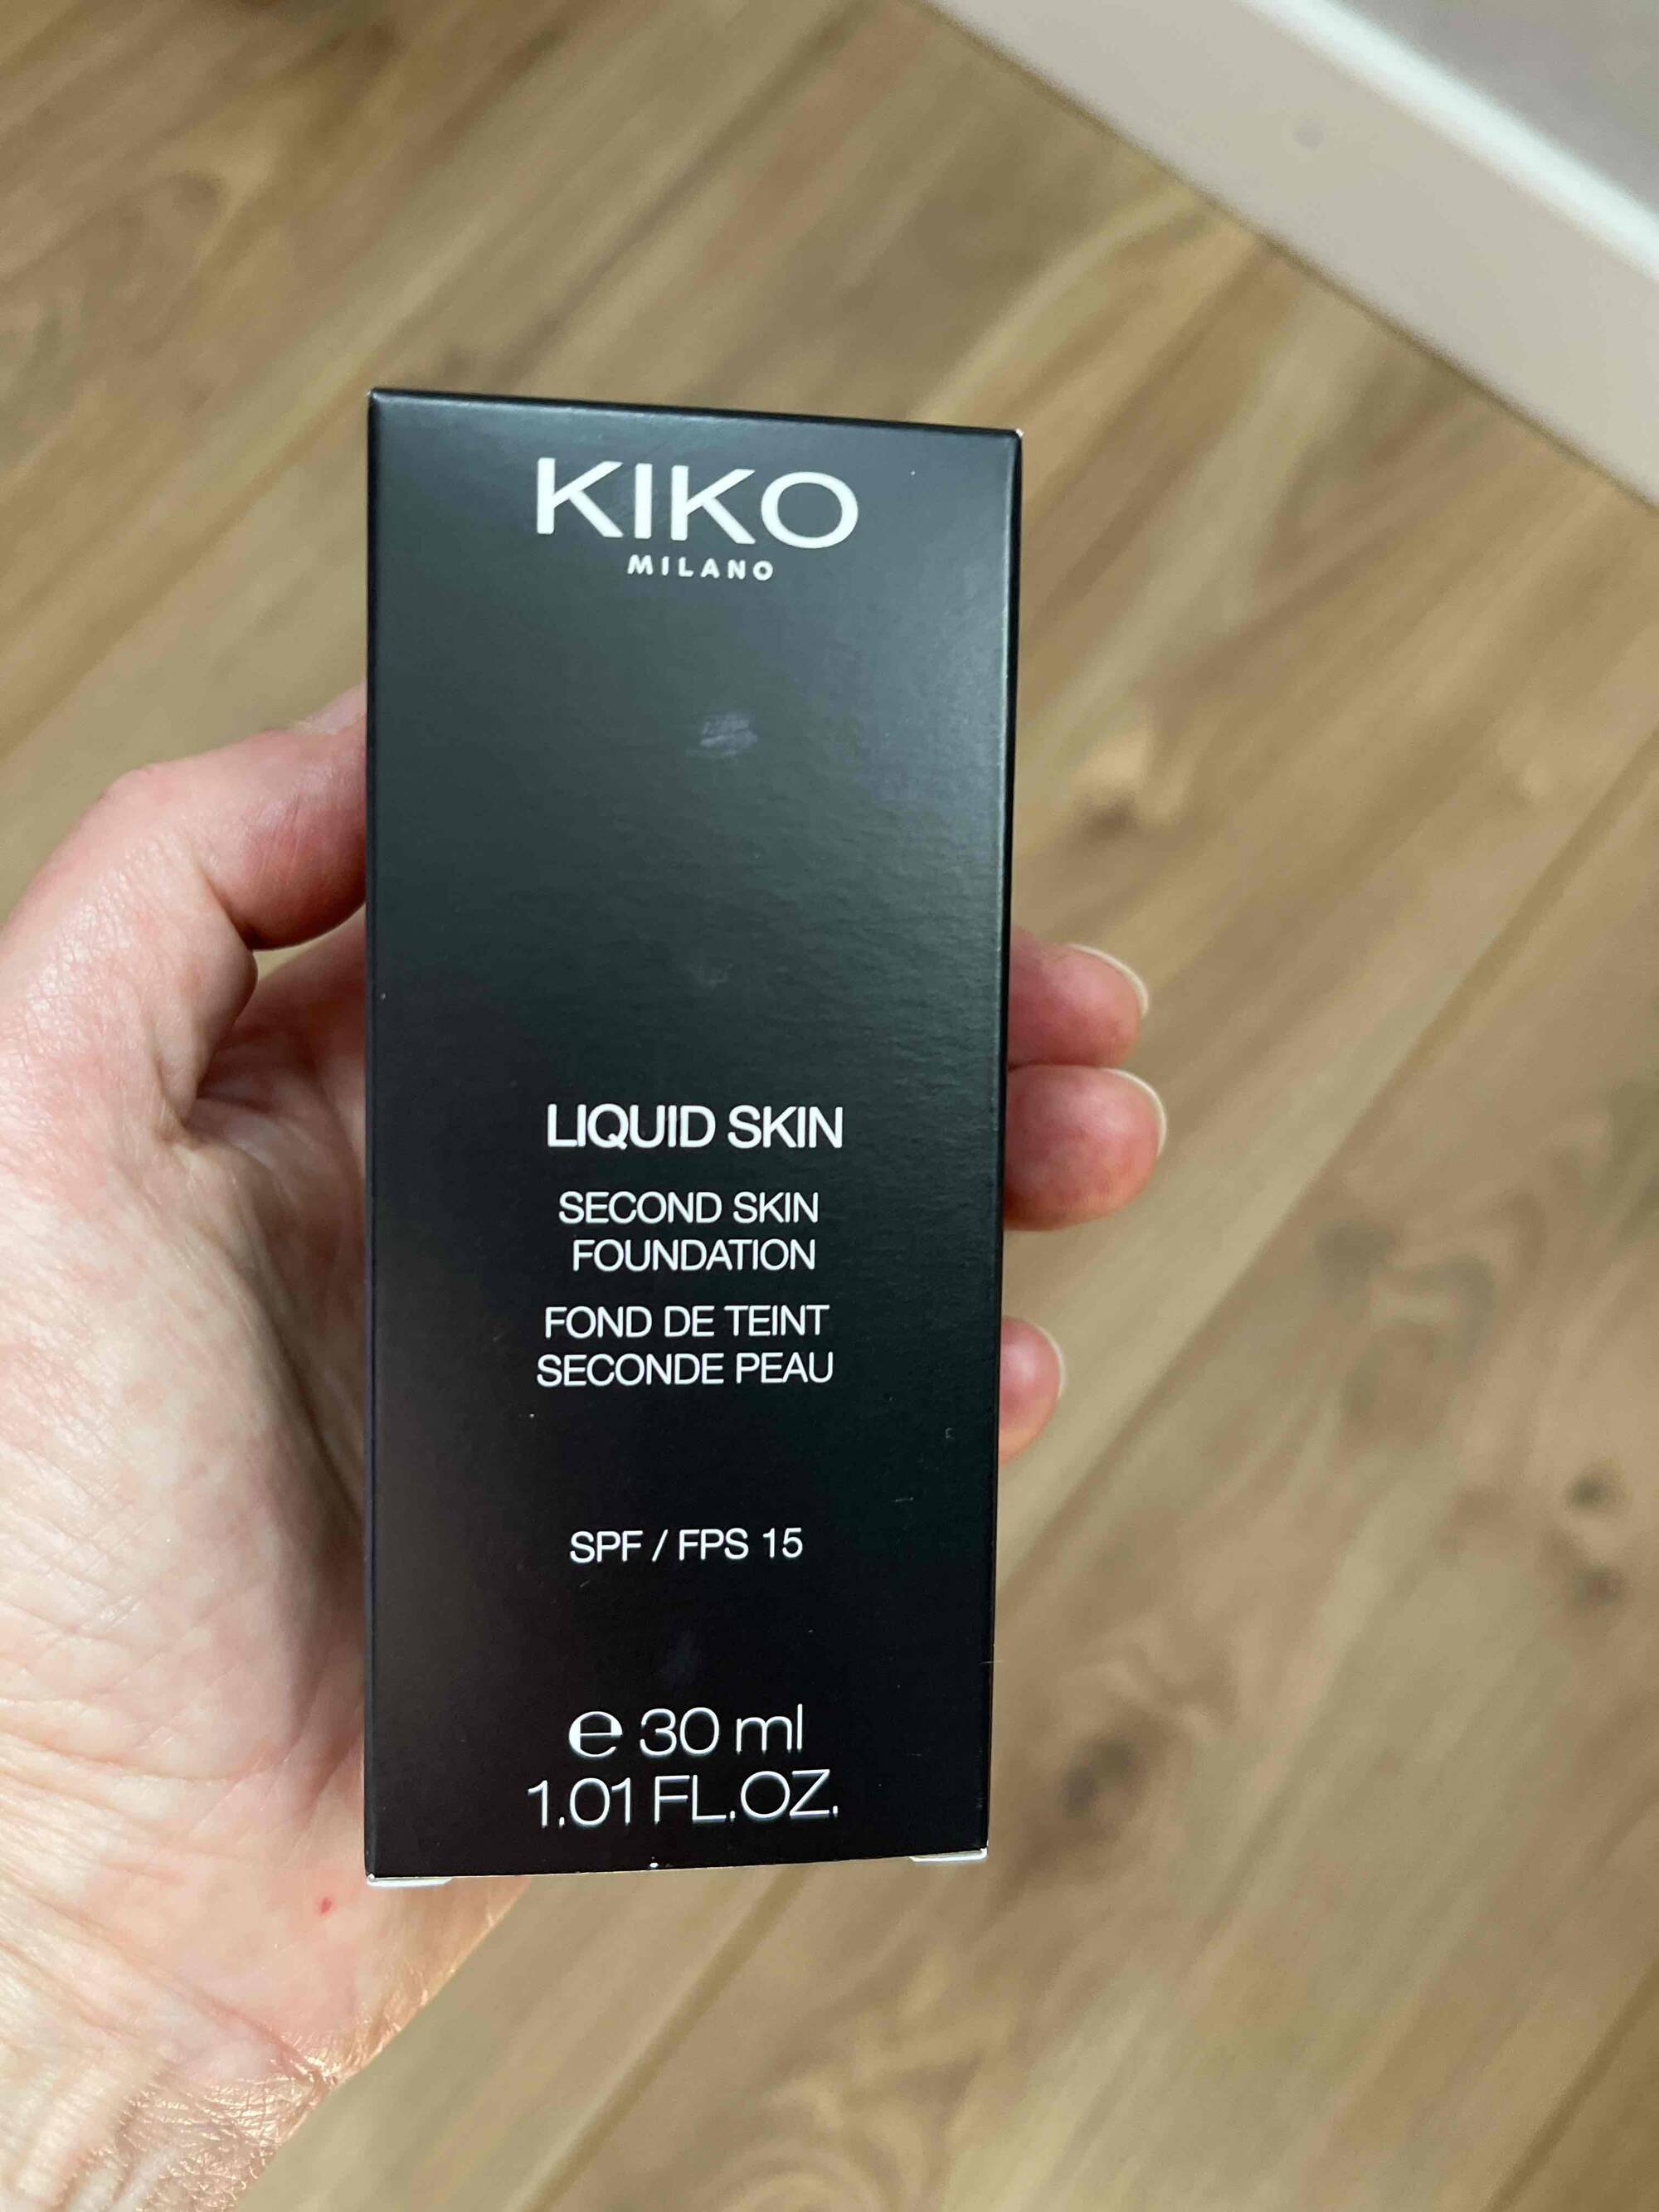 KIKO - Liquid skin Fond de teint seconde peau